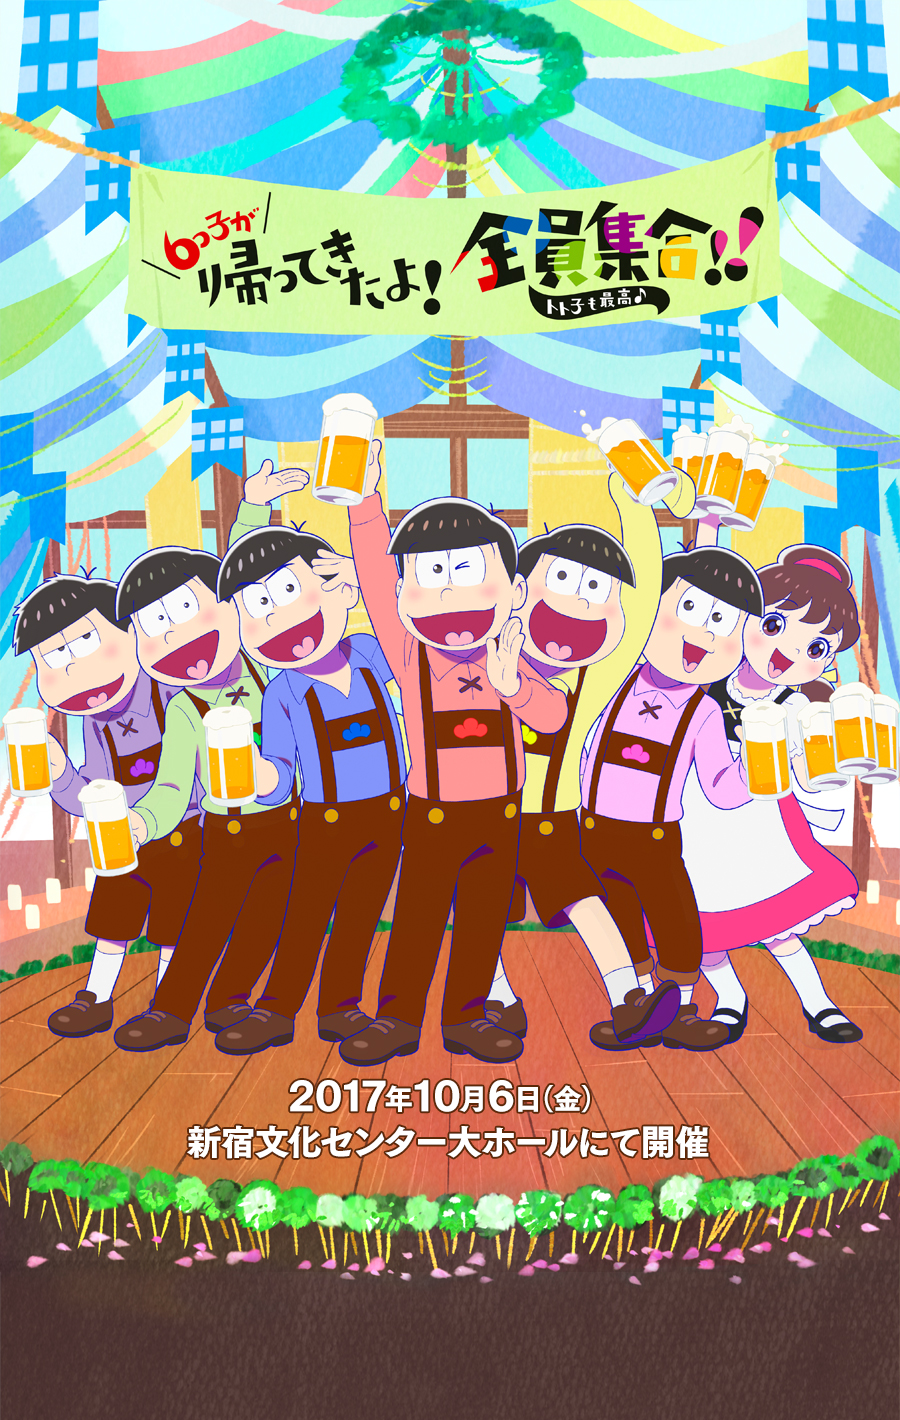 6つ子が帰ってきたよ！全員集合！！トト子も最高♪ 2017年10月6日（金）新宿文化センター大ホールにて開催